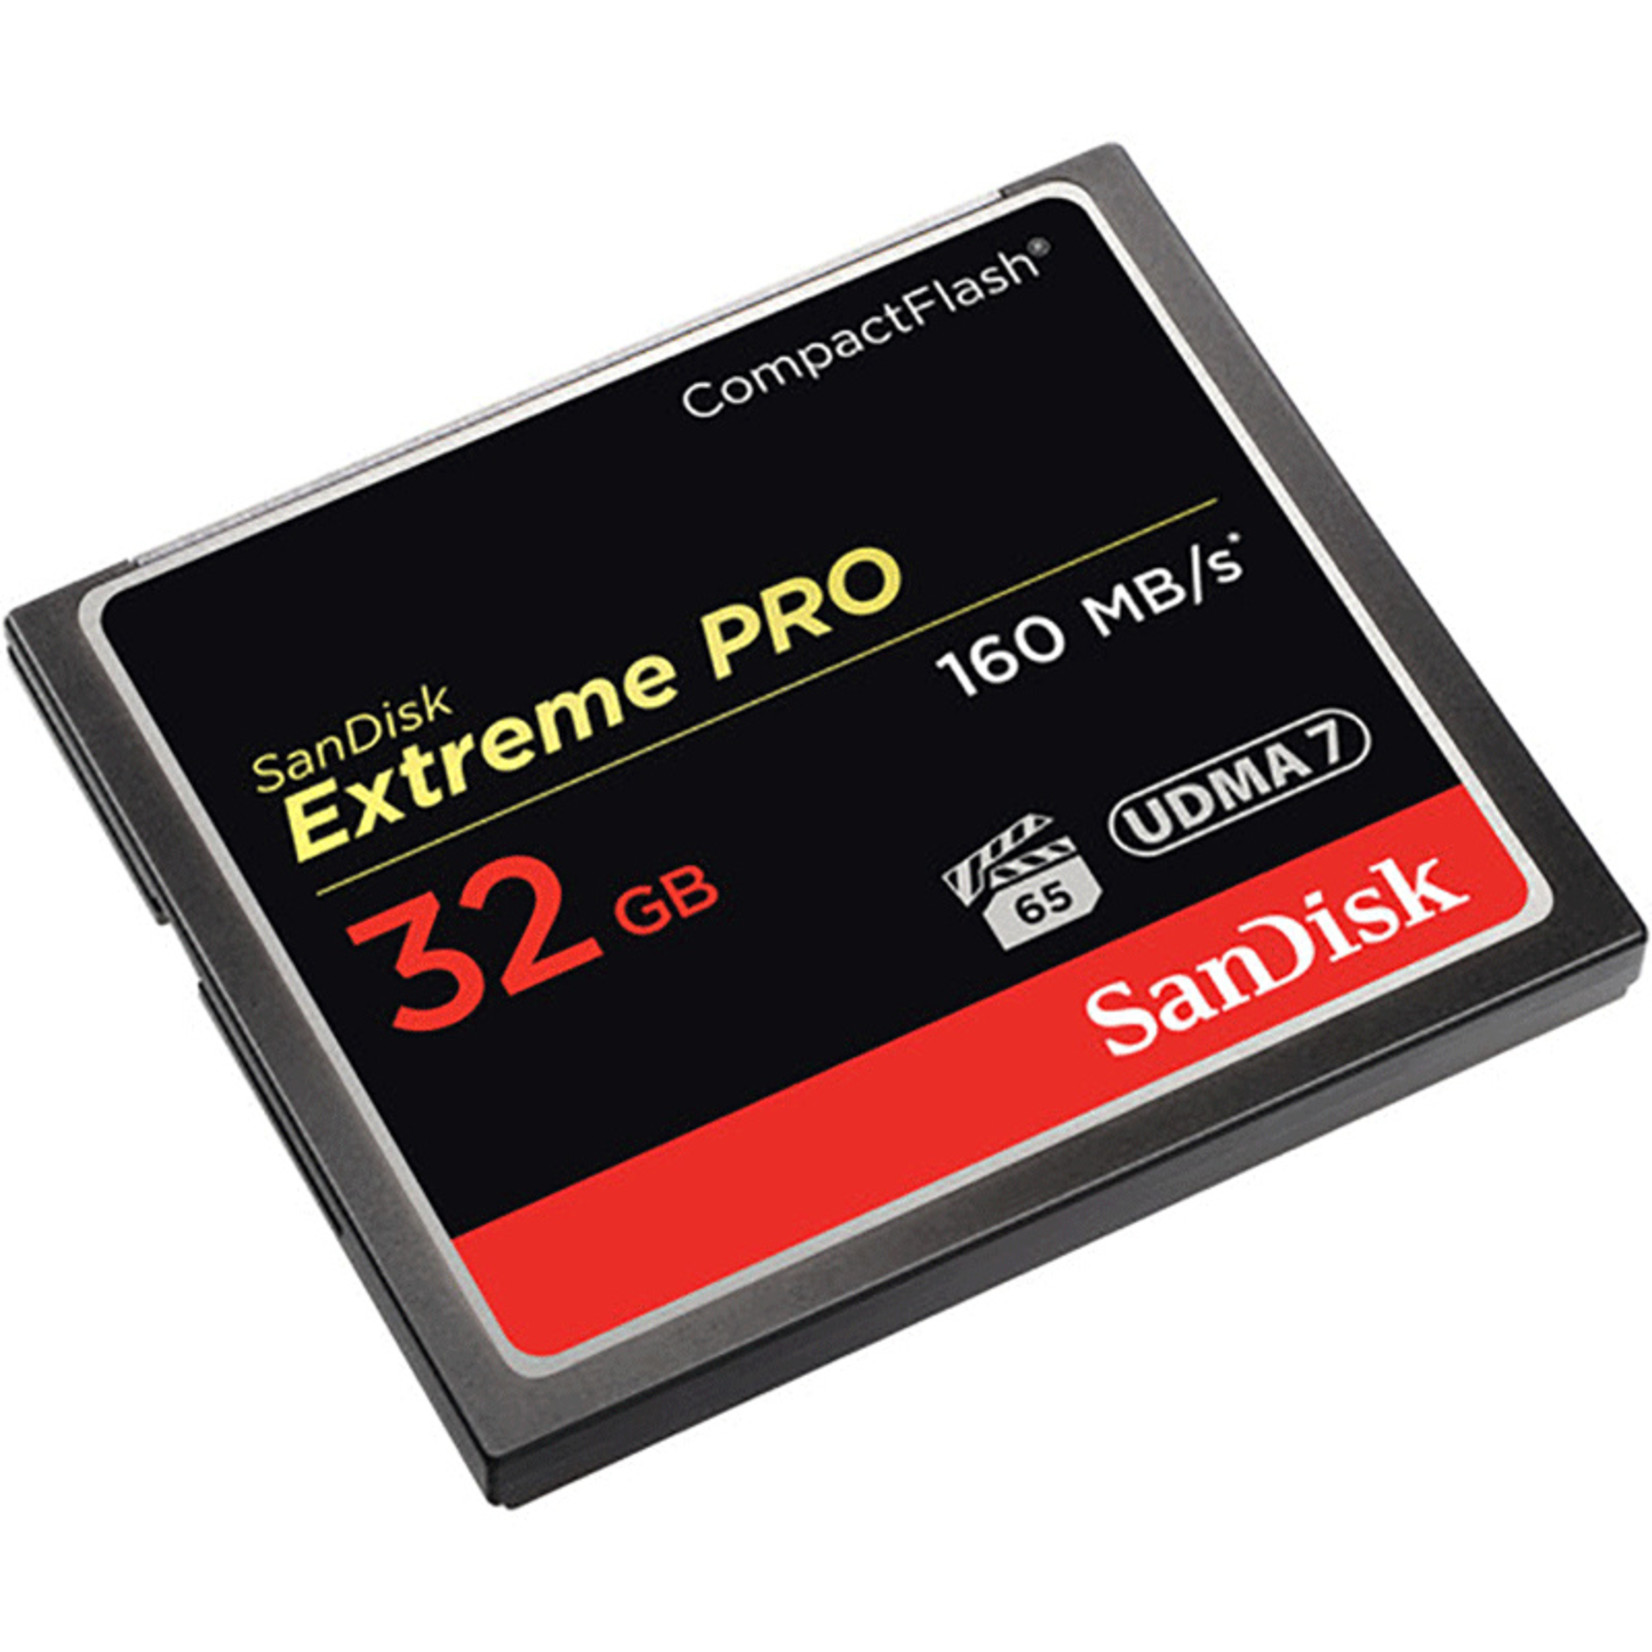 Domke SanDisk Extreme Pro CompactFlash Memory Card 160 Mbps